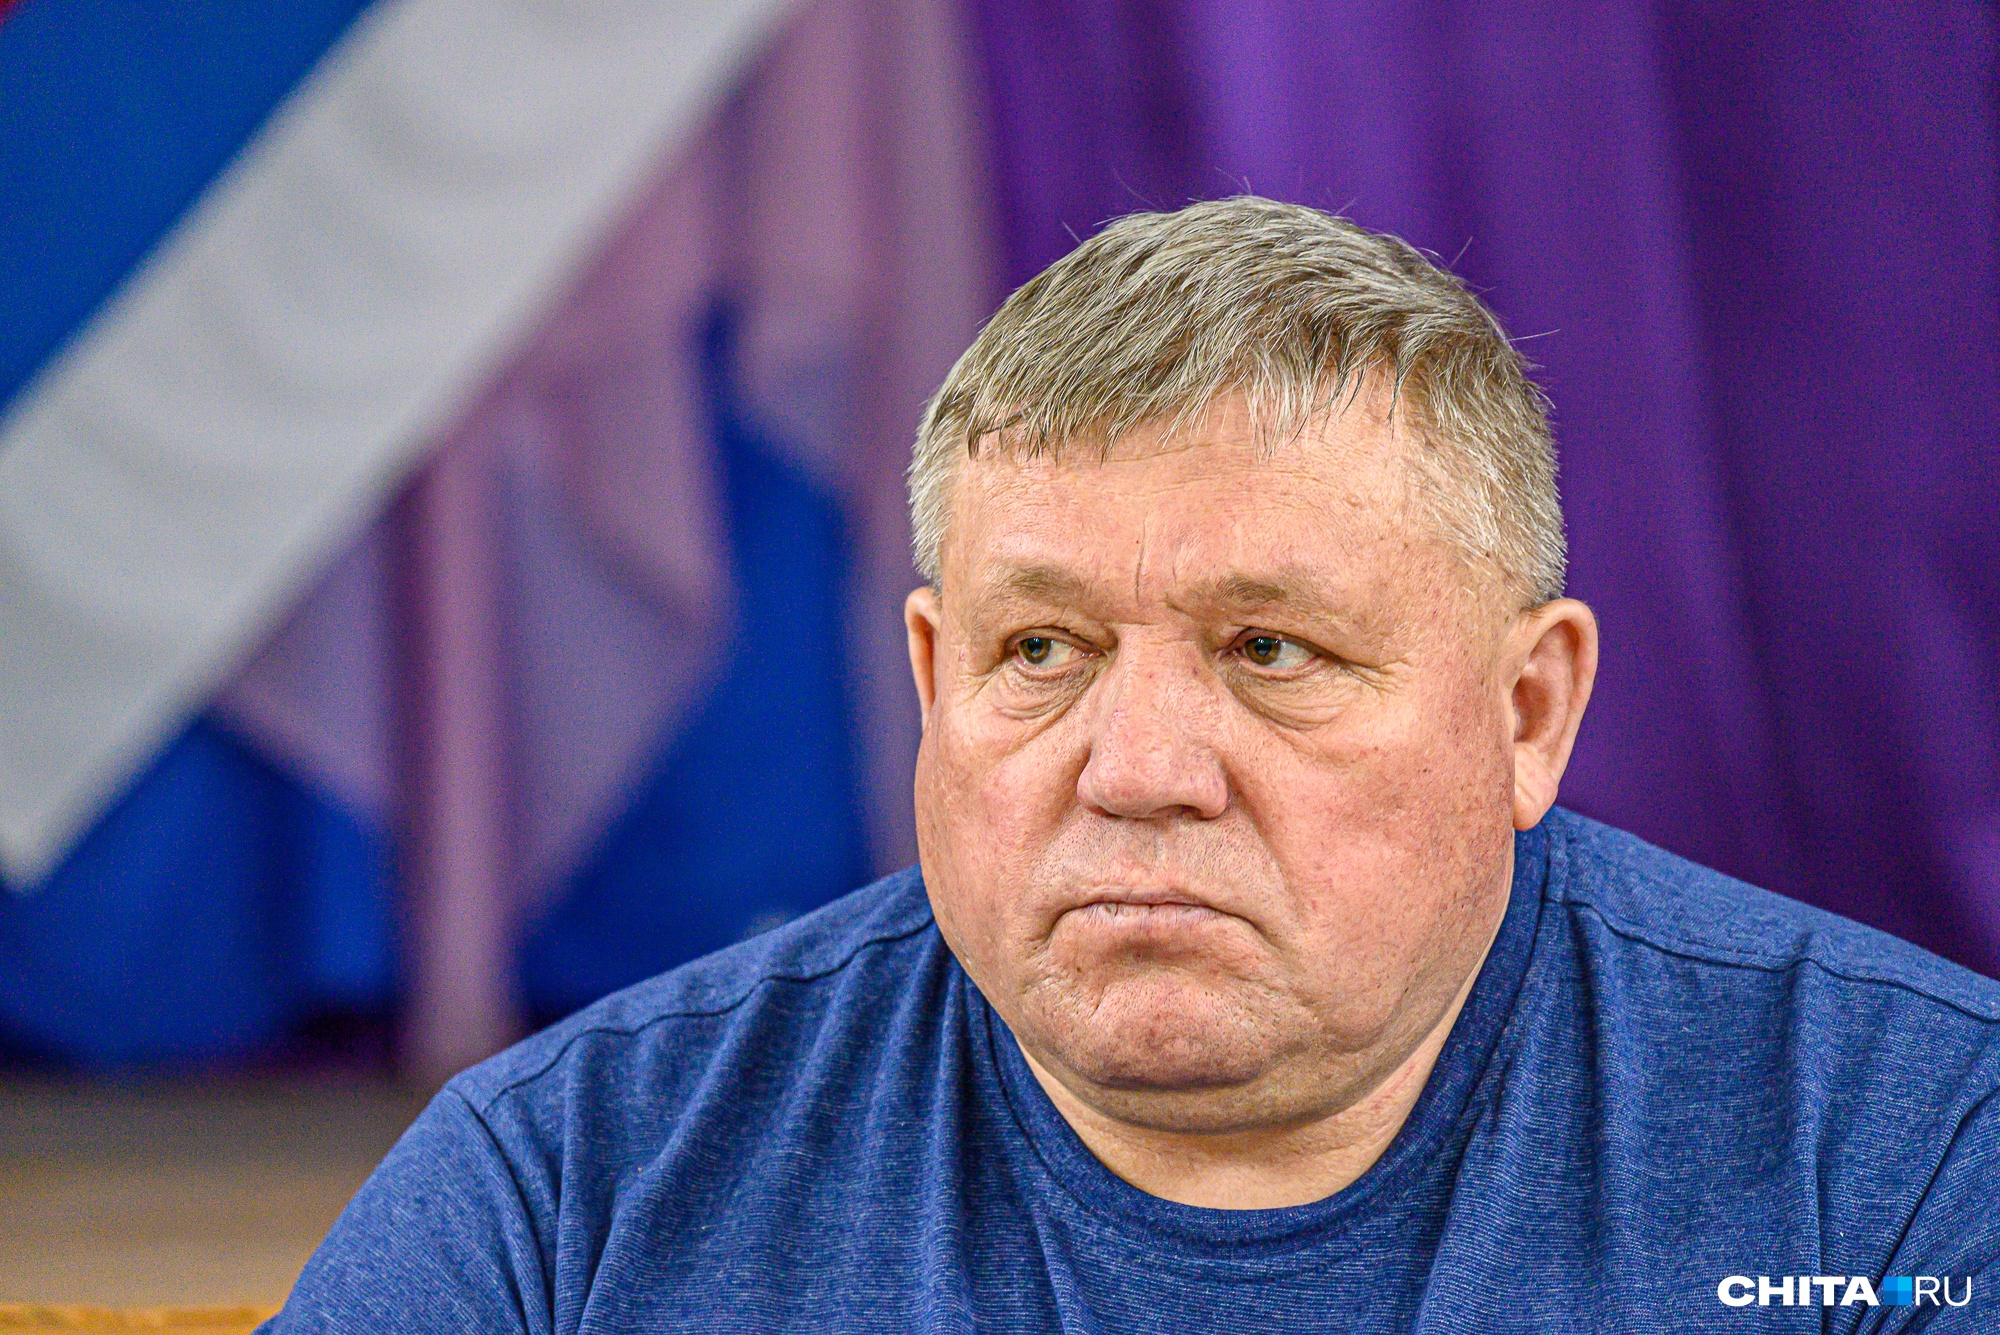 Глава района в Забайкалье премировал сам себя на 300 тысяч рублей